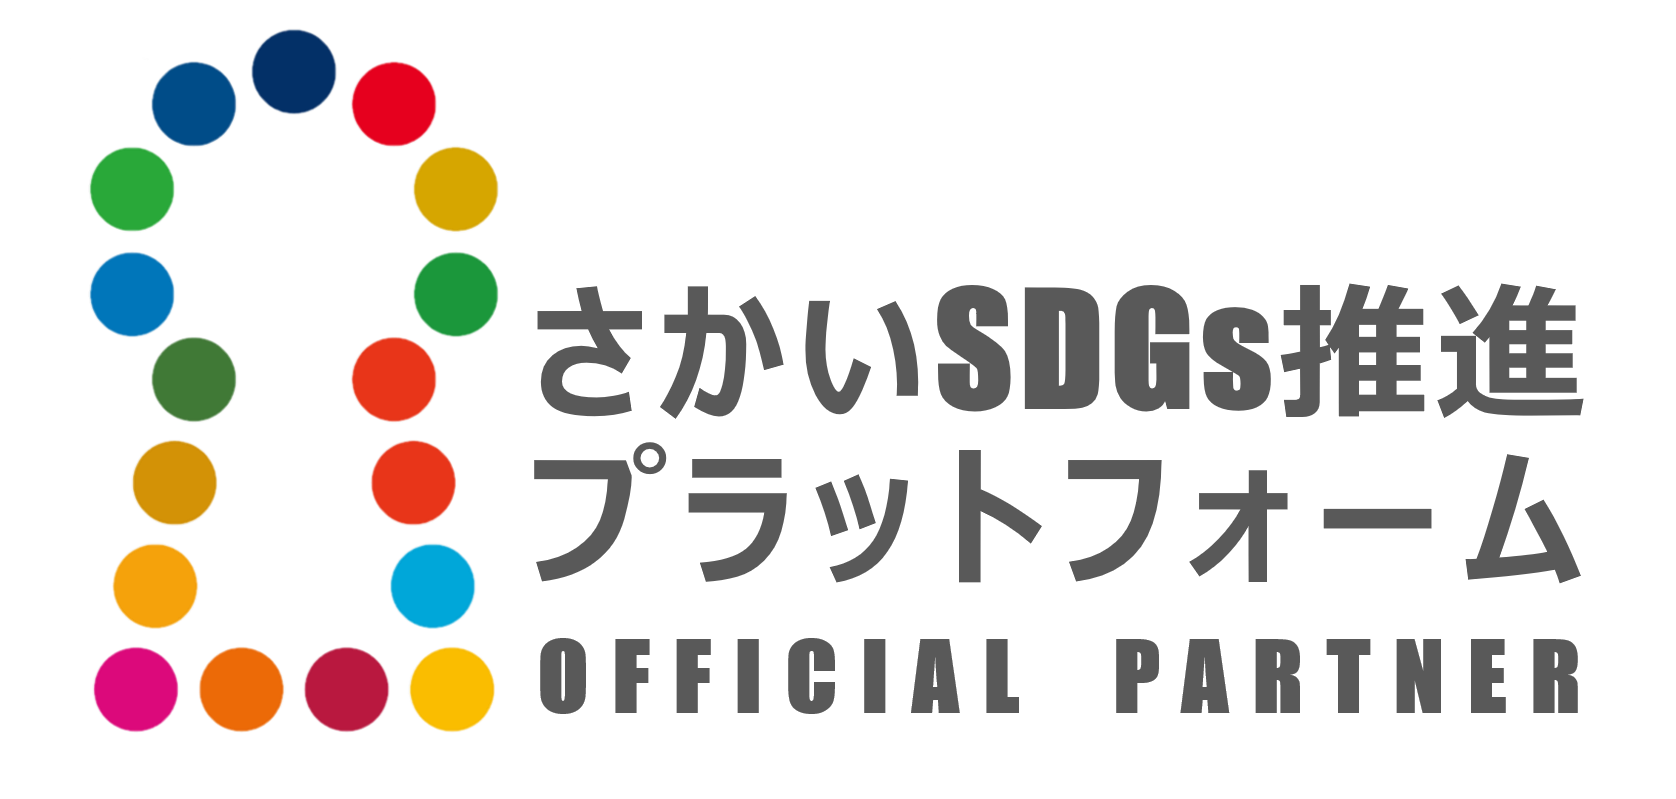 【横】さかいSDGs推進プラットフォーム公式ロゴマーク（OFFICIAL PARTNER）